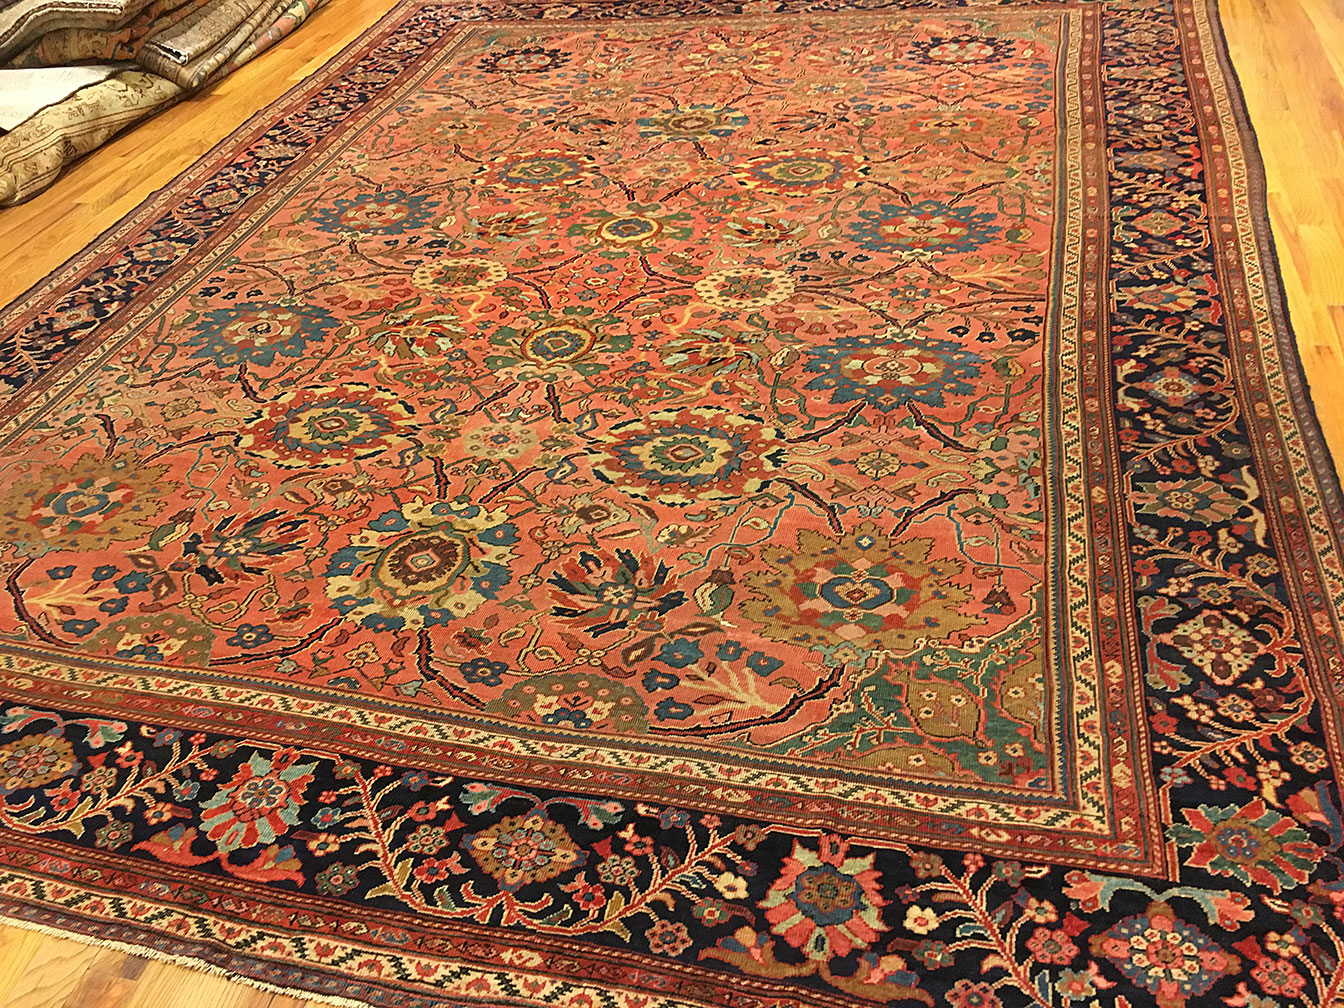 Antique sultan abad Carpet - # 52113